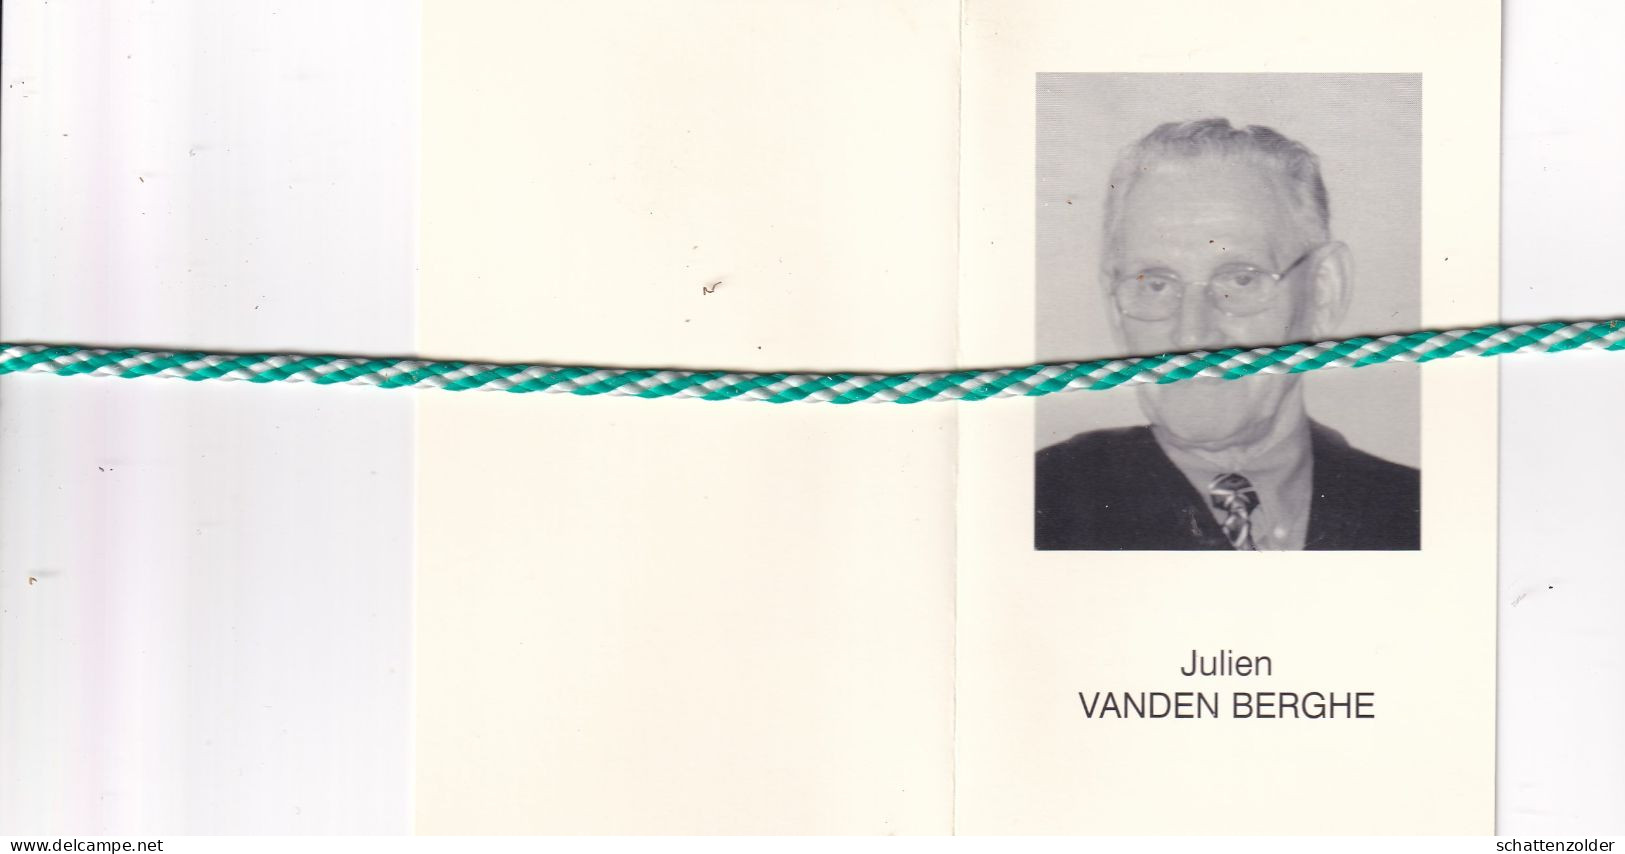 Julien Vanden Berghe-Comergo, Waarschoot 1928, Eeklo 2001. Foto - Overlijden